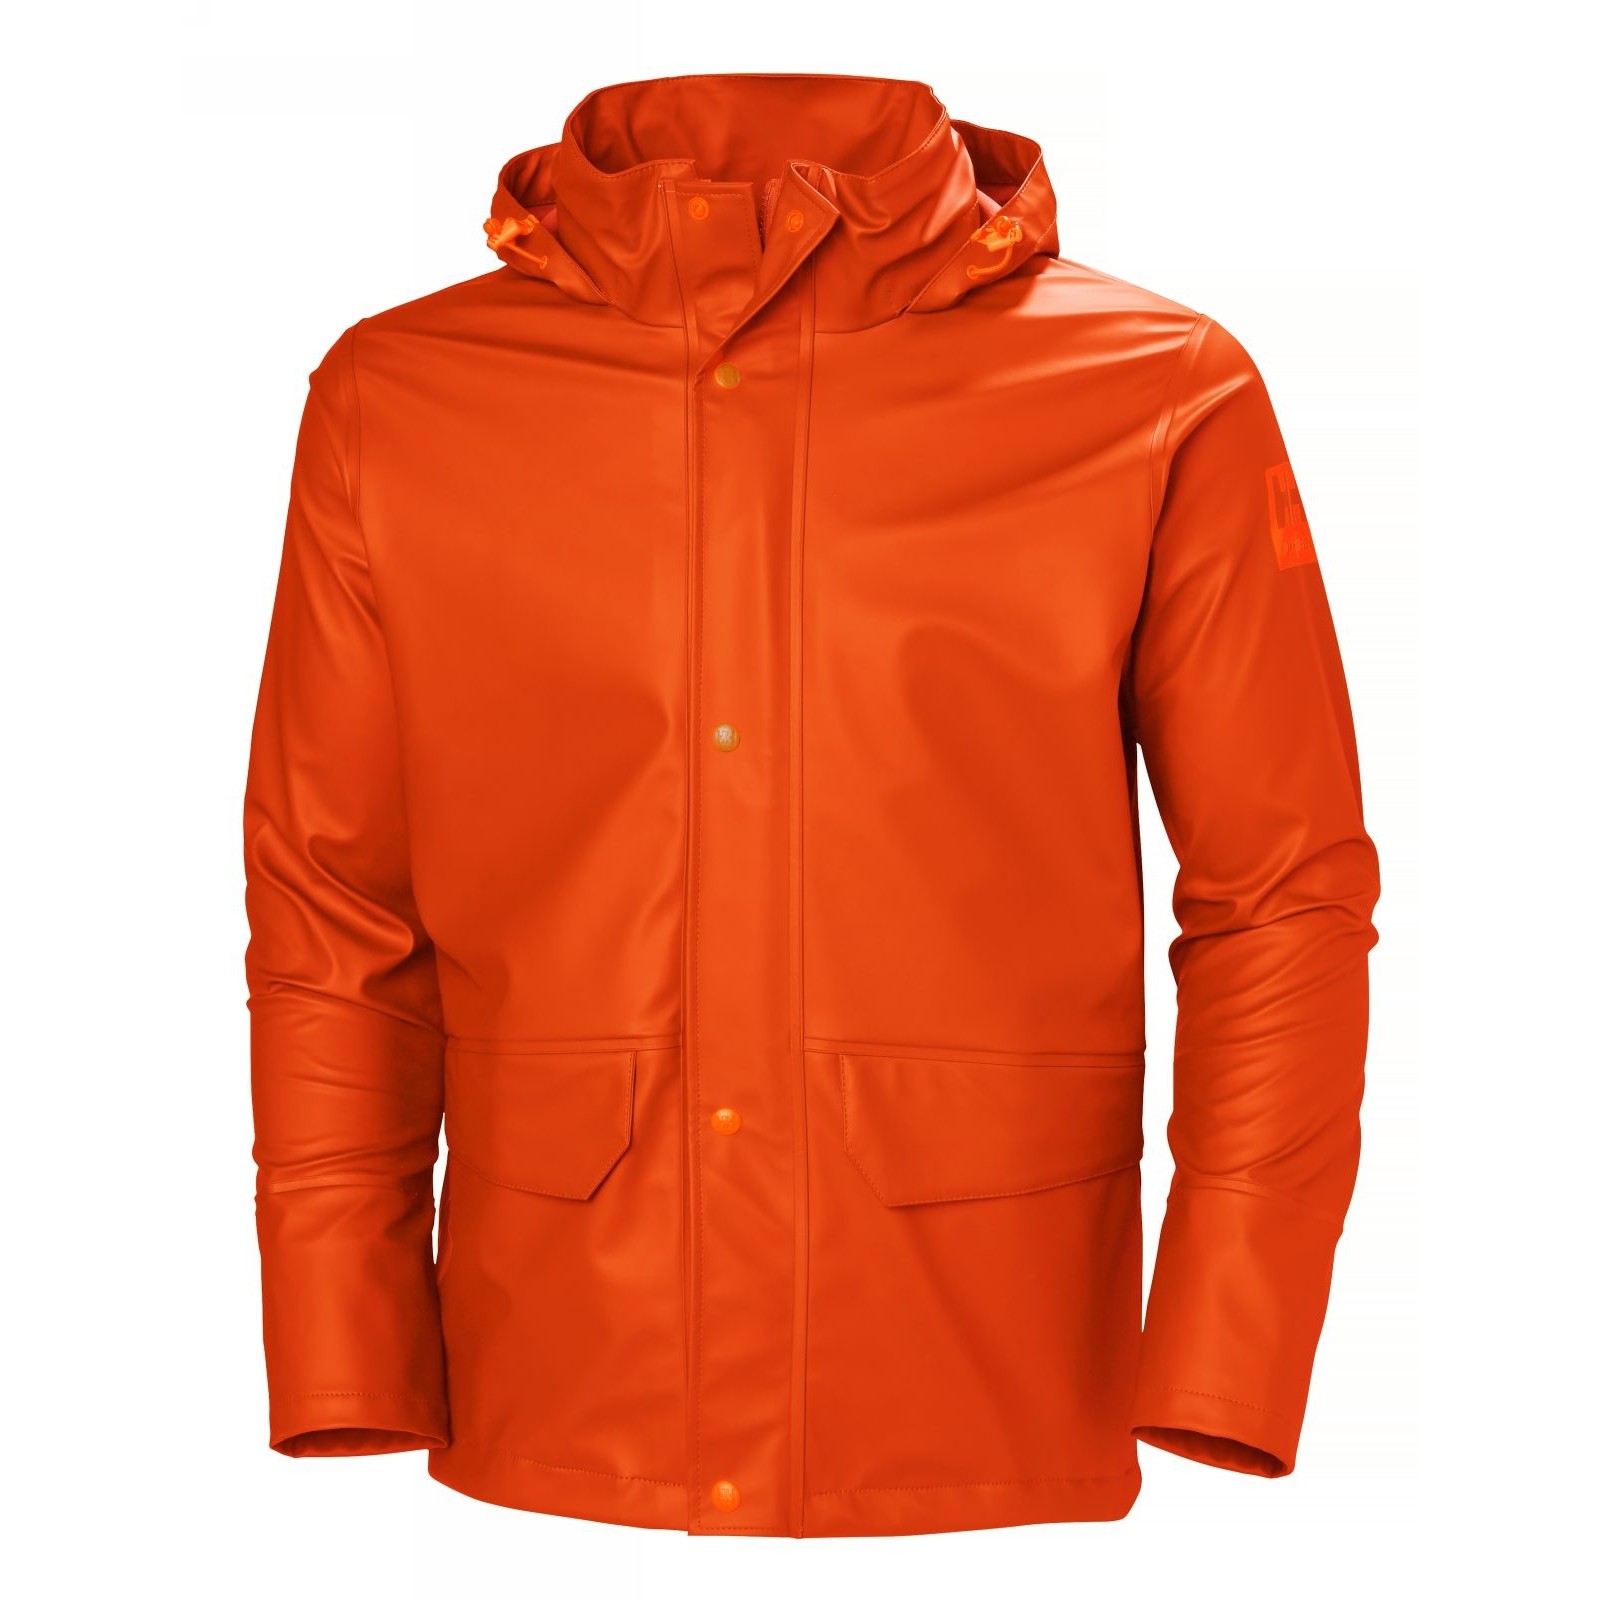 Куртка водонепроницаемая оранжевая Helly Hansen Gale Rain размер M, Osculati 24.502.12